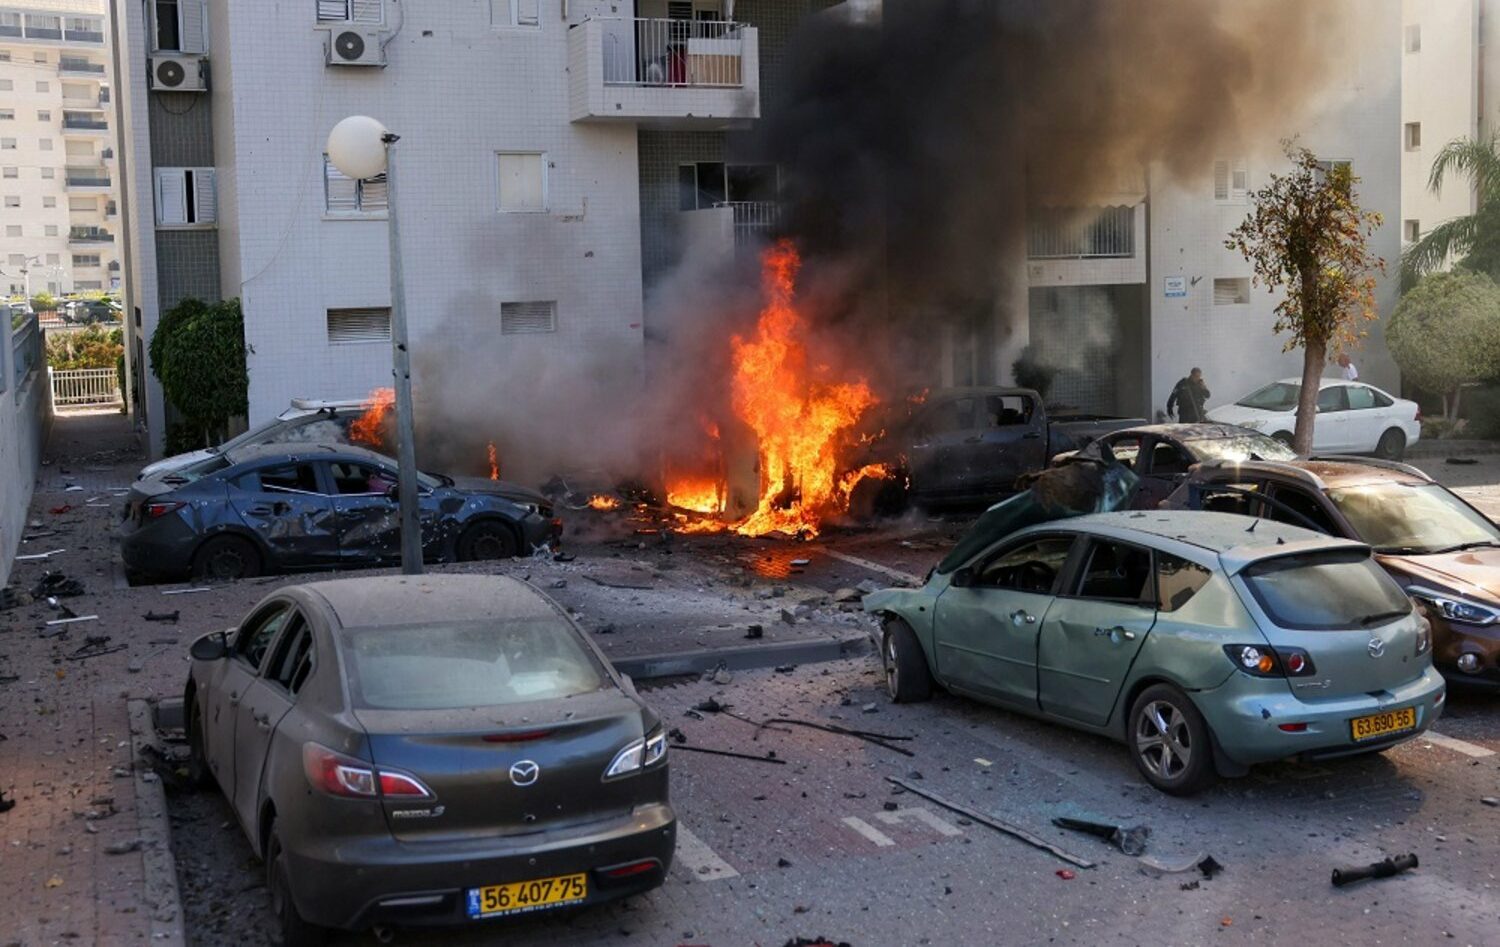 Hamas's October 7 attack